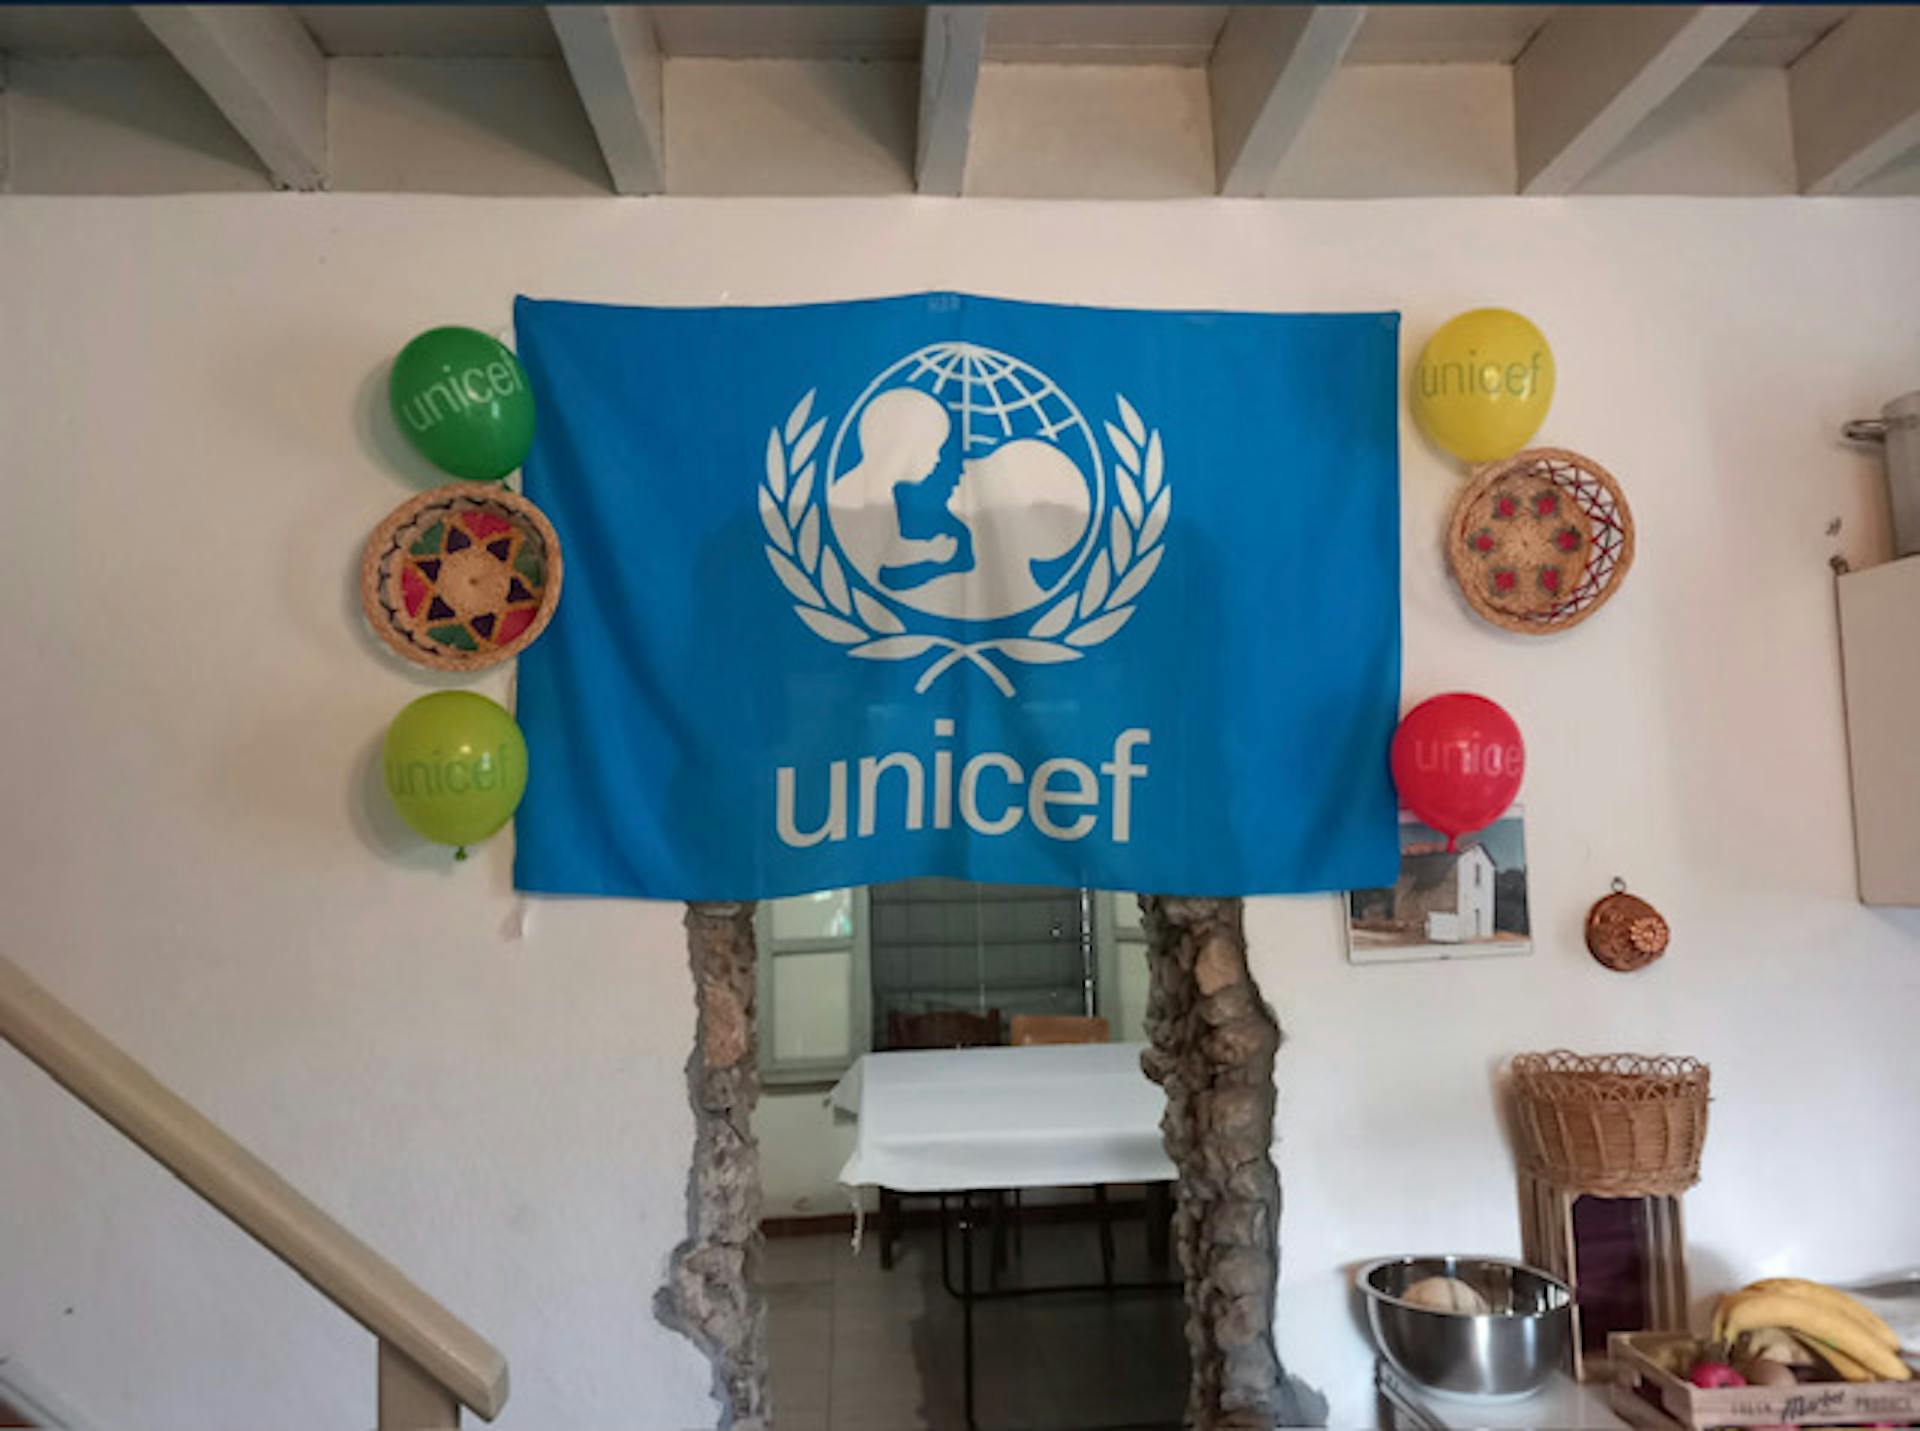 Interno della baita con la bandiera UNICEF